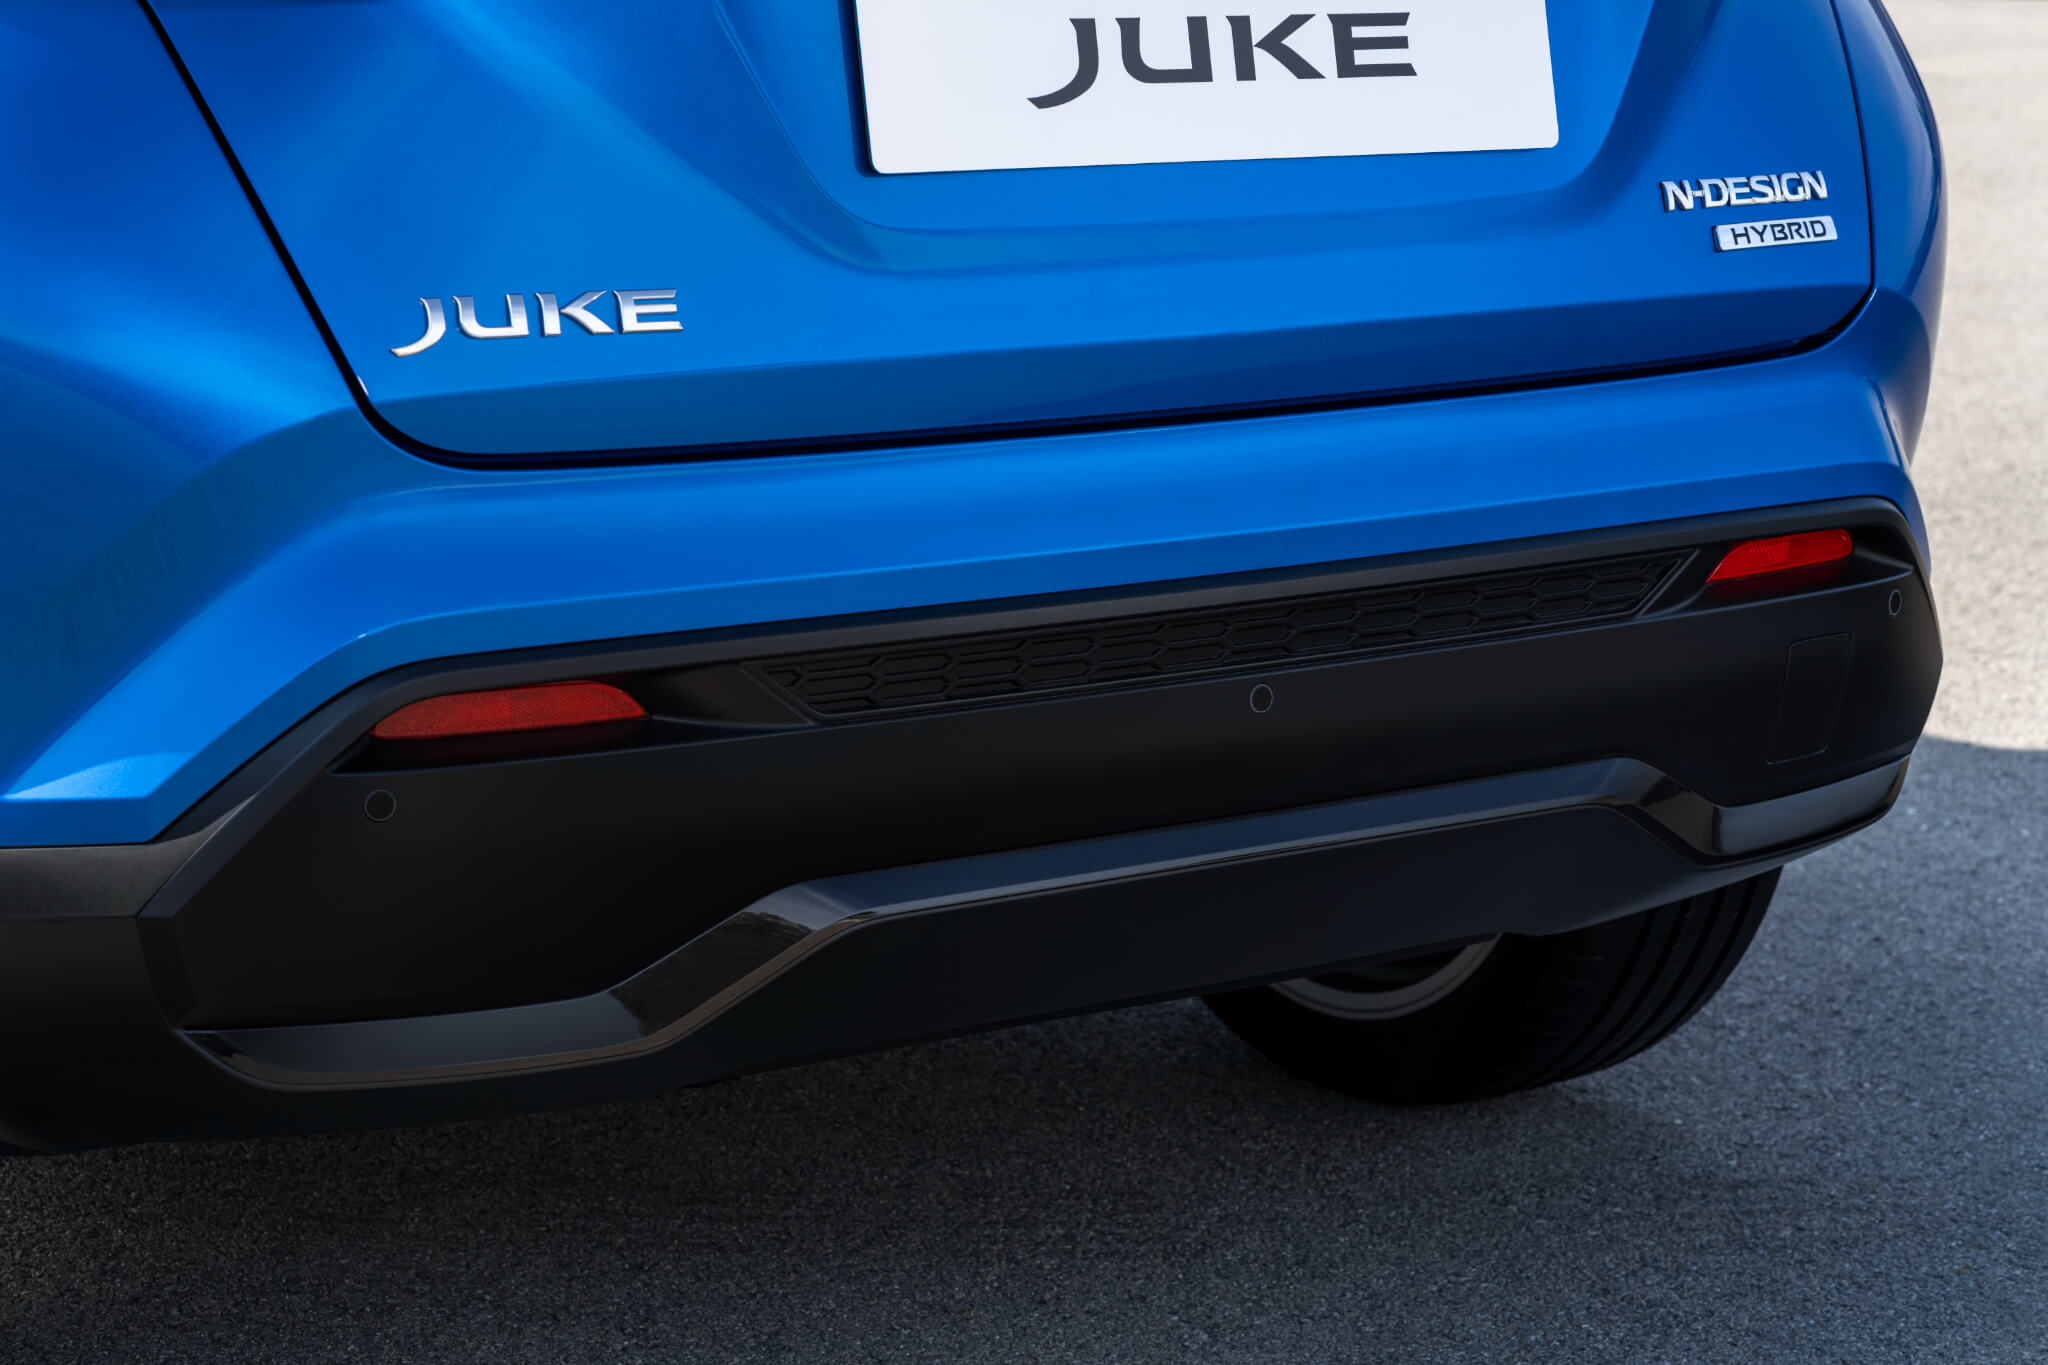 Nissan Juke Hybrid